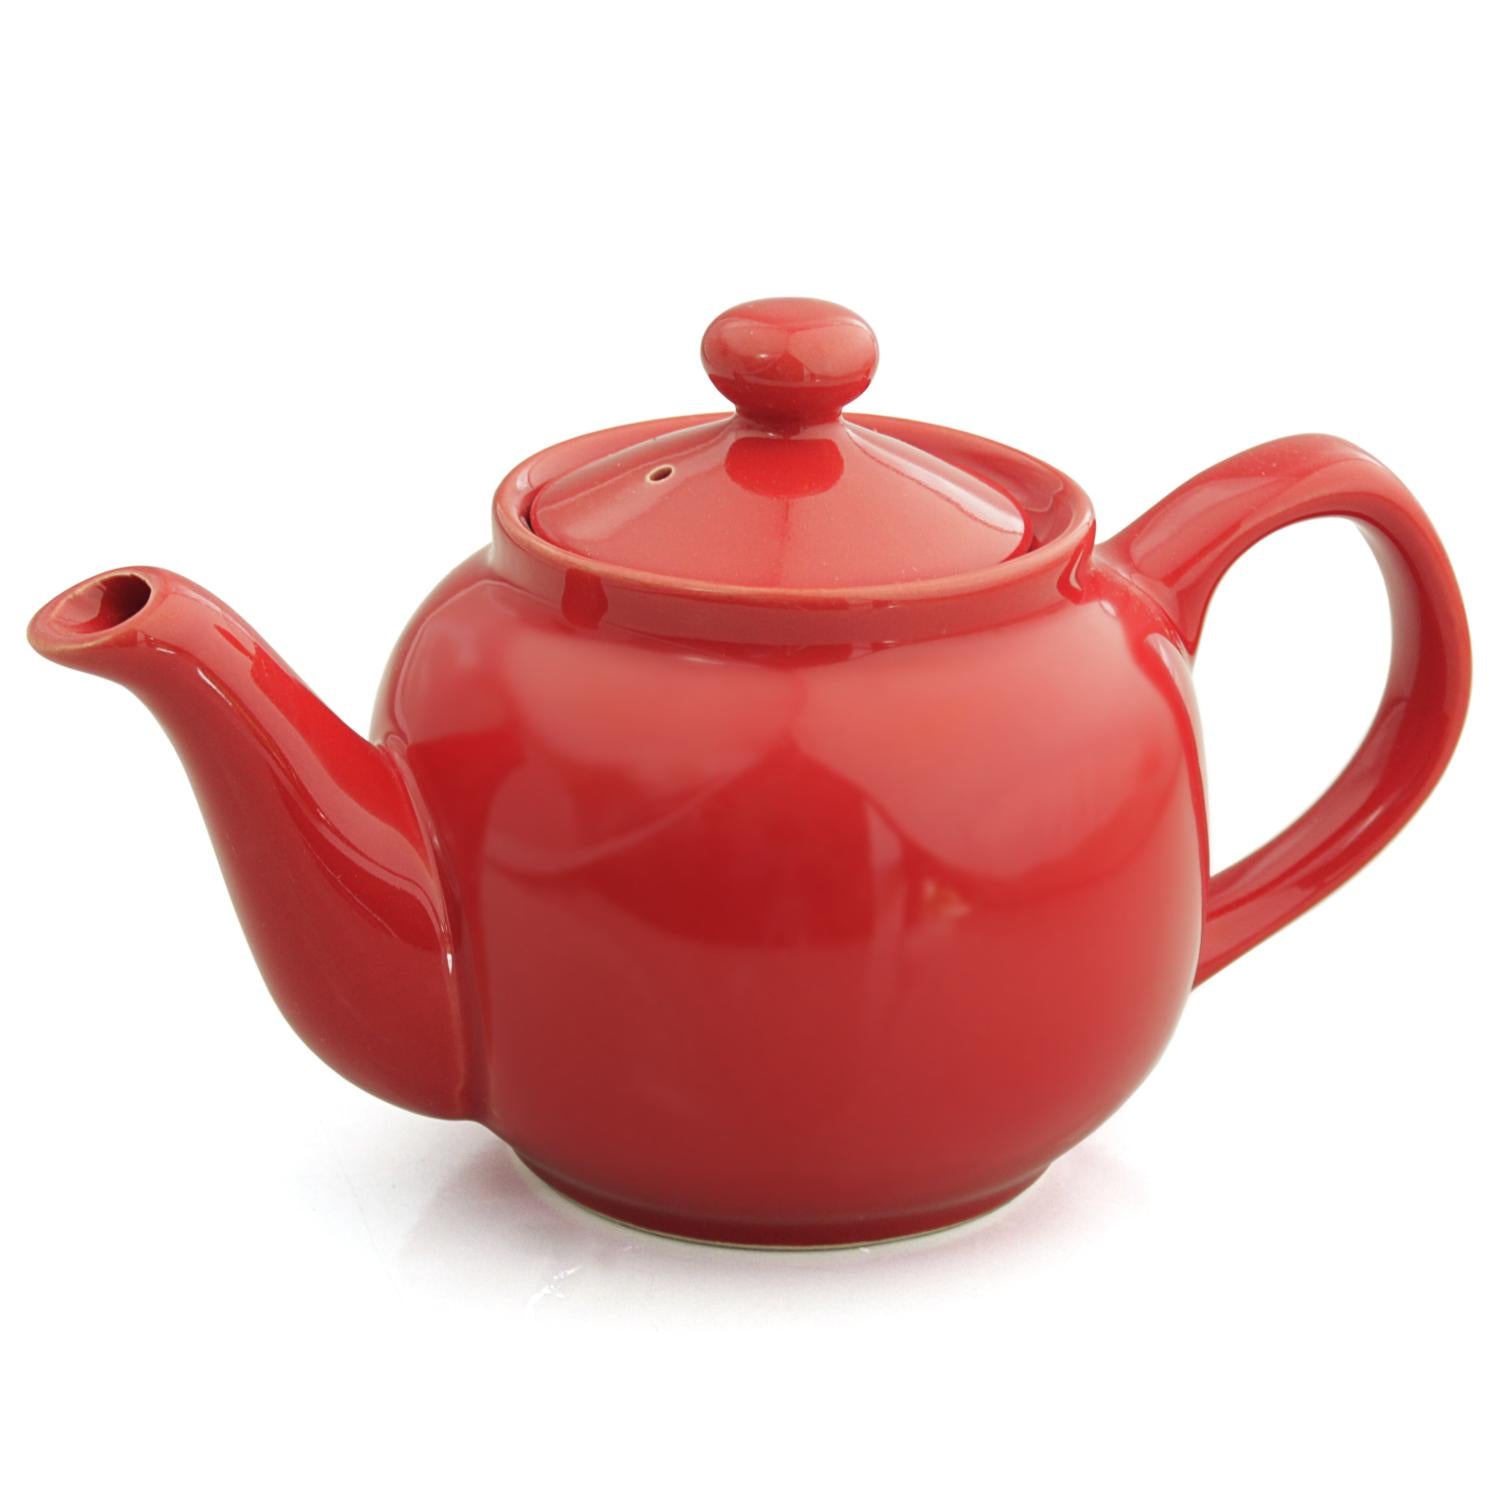 Vermillion 2 Cup Tea Pot